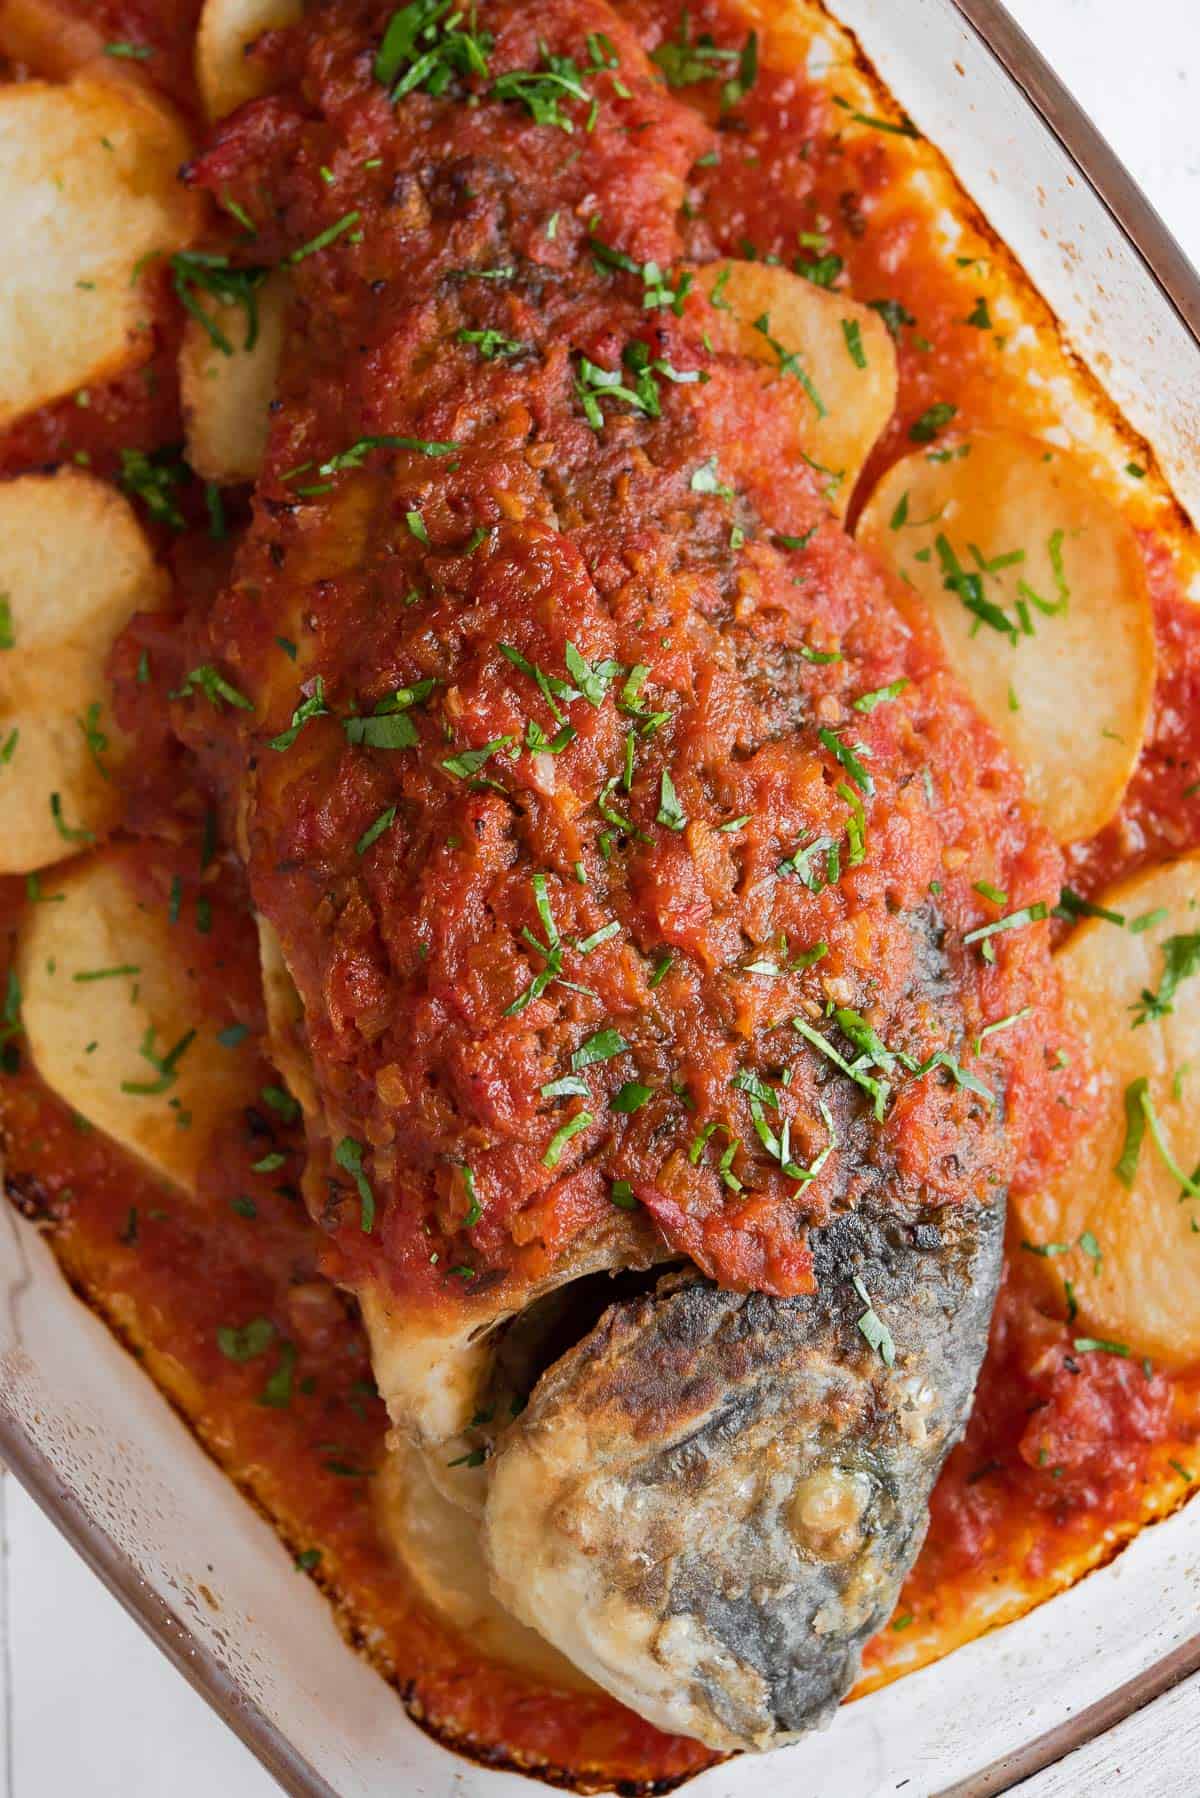 Sea Bream Fish Recipe With Tomato Sauce